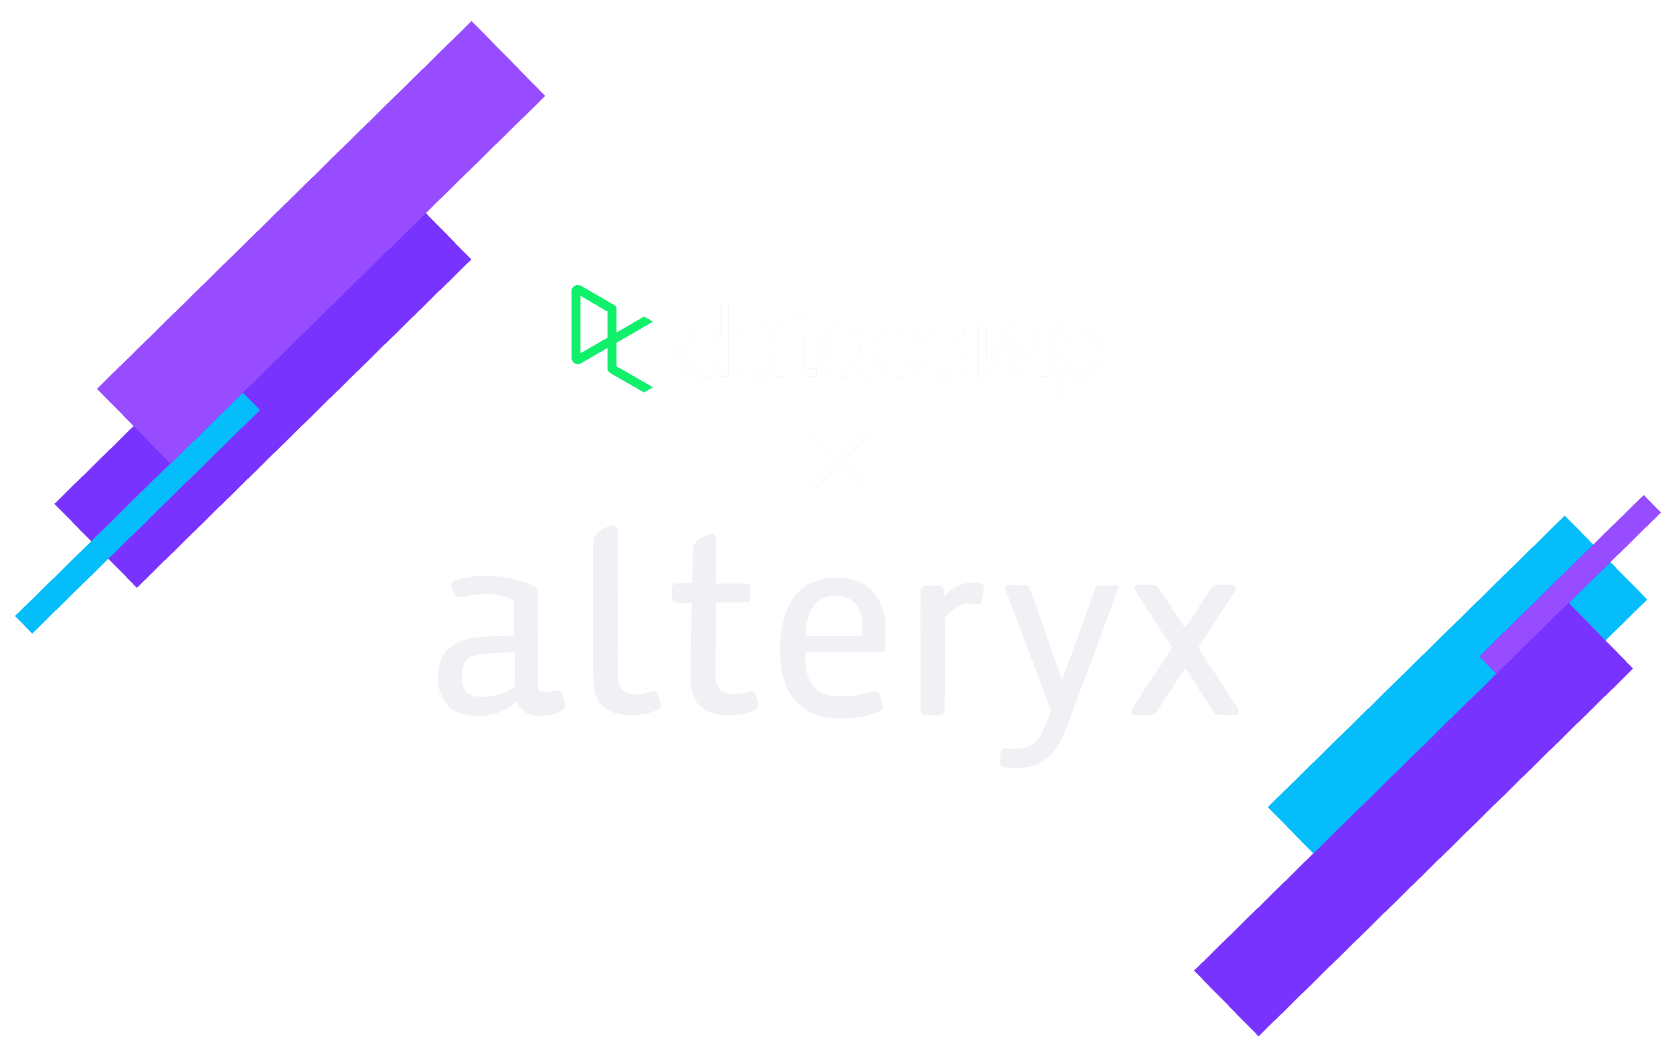 Alteryx and Datacamp